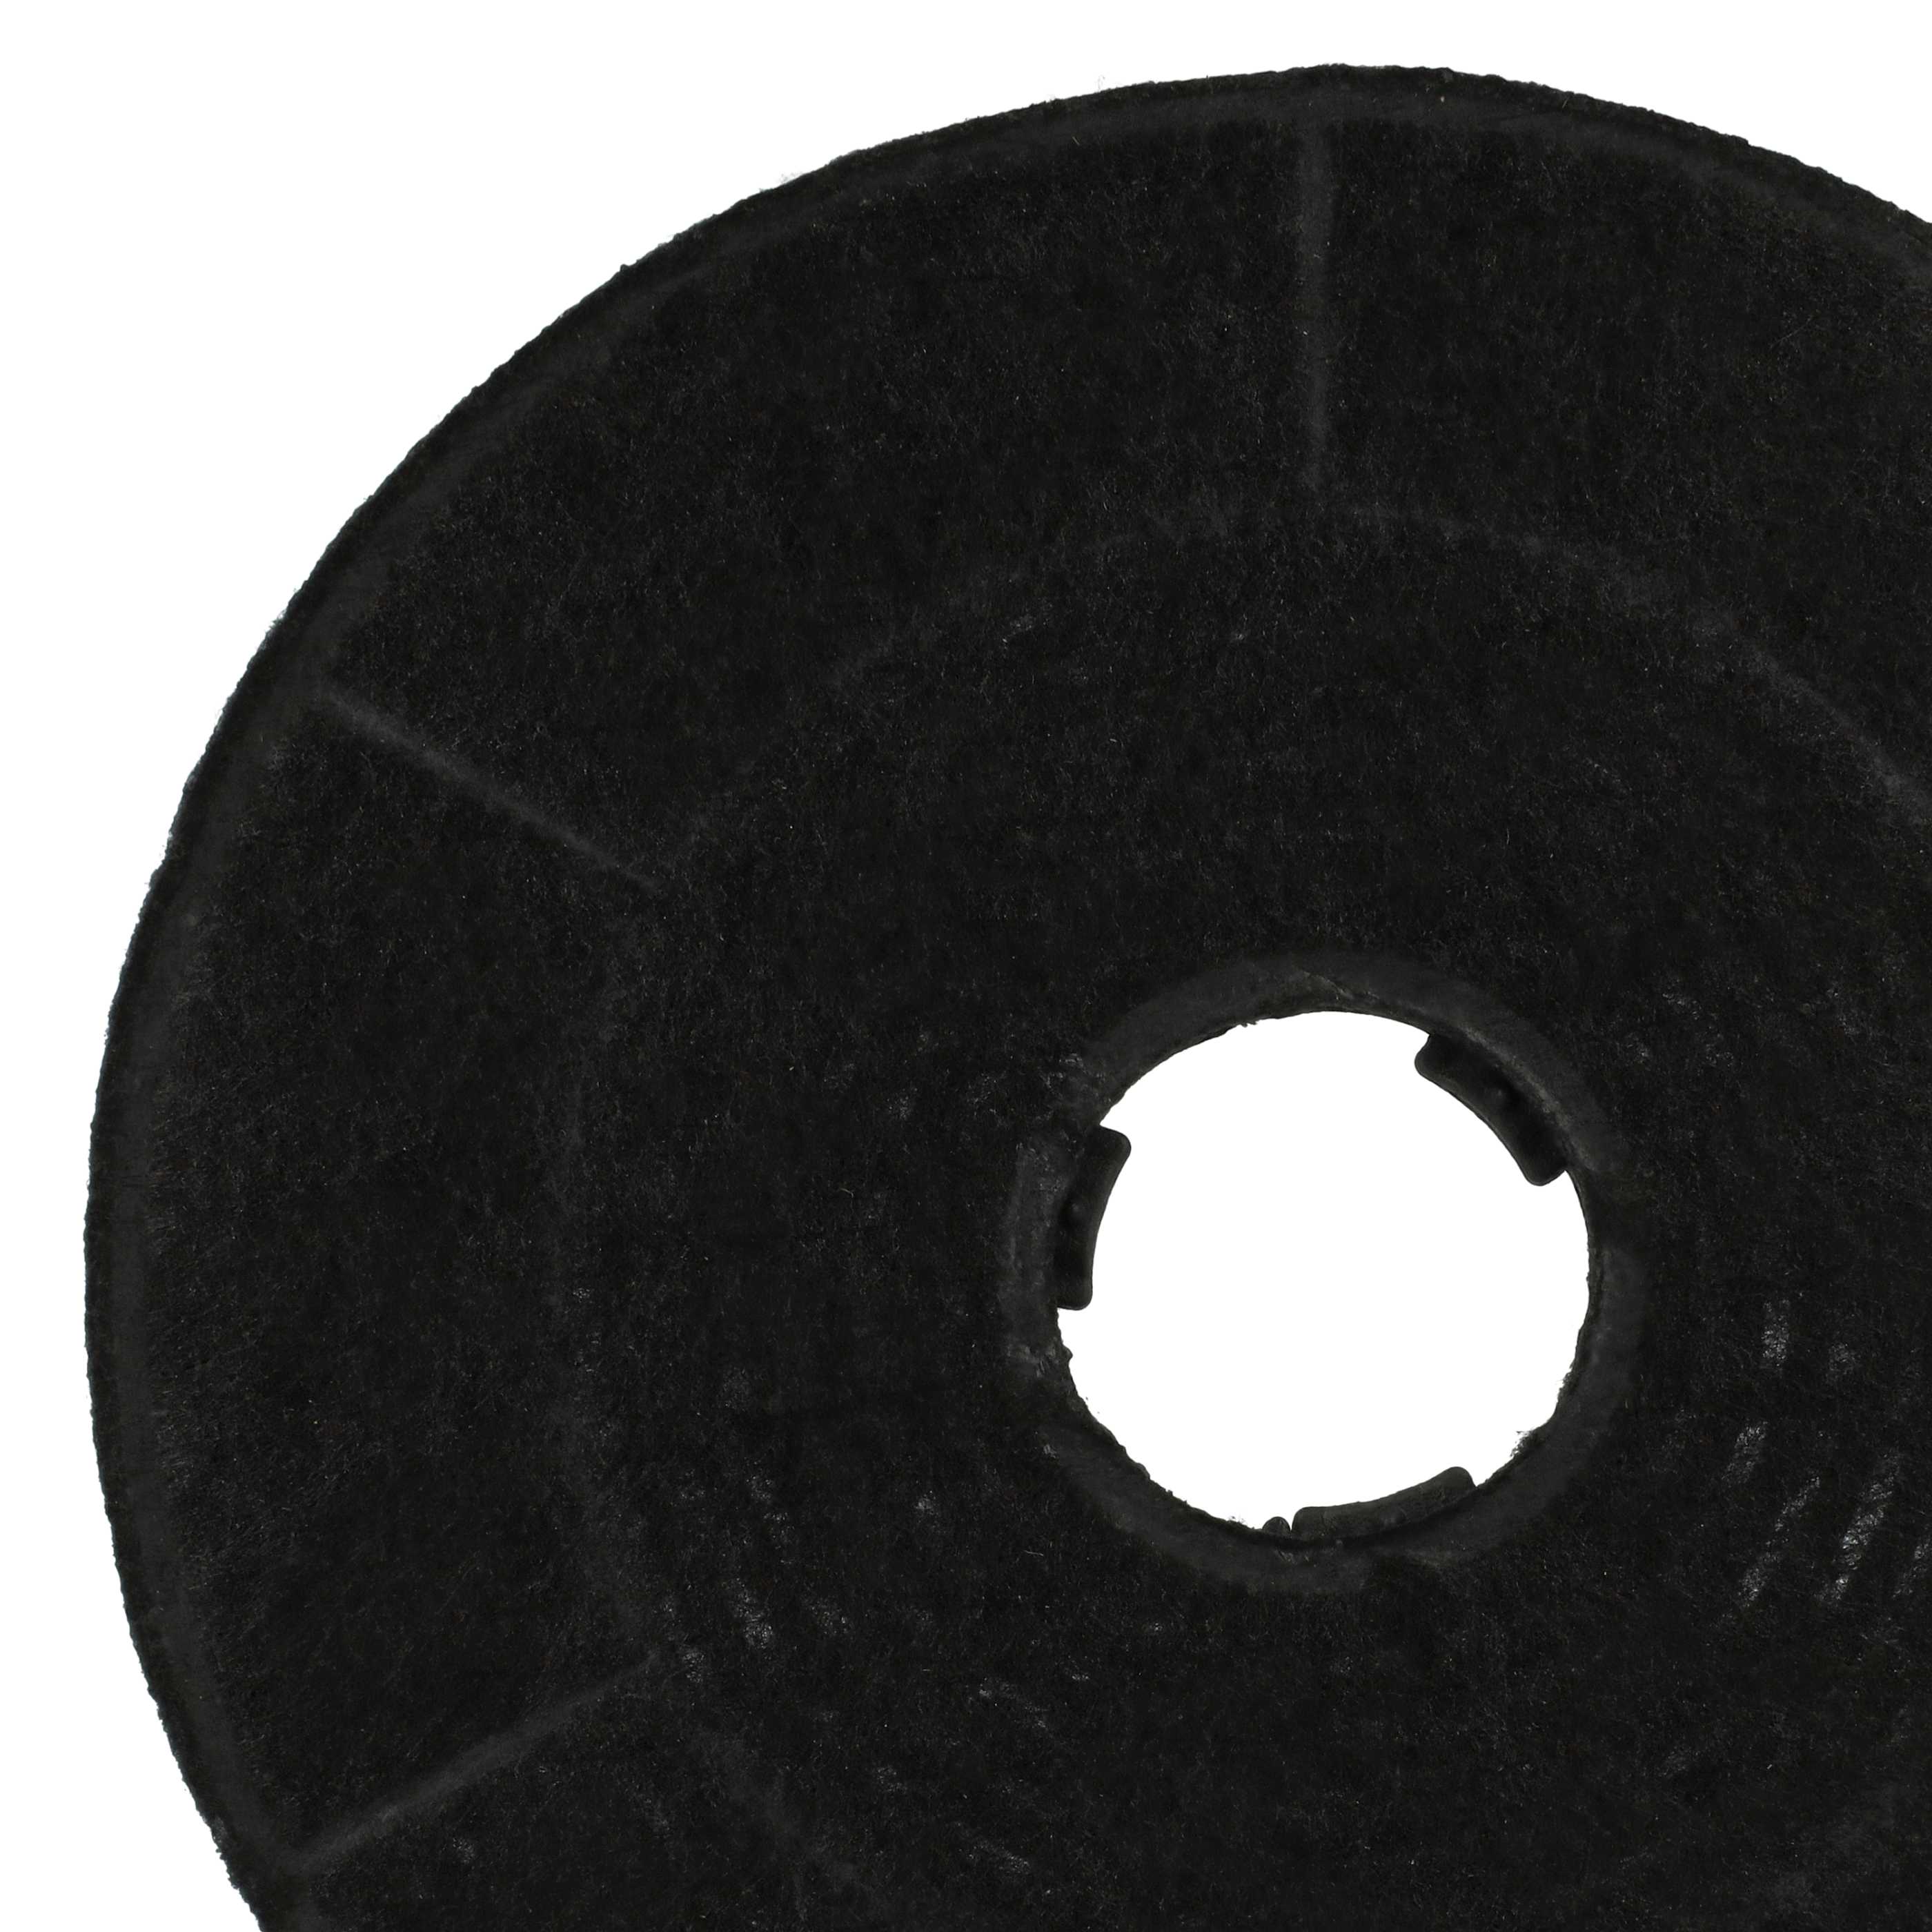 Filtro de carbón activado reemplaza Amica KF 17146 para campanas - 16 cm